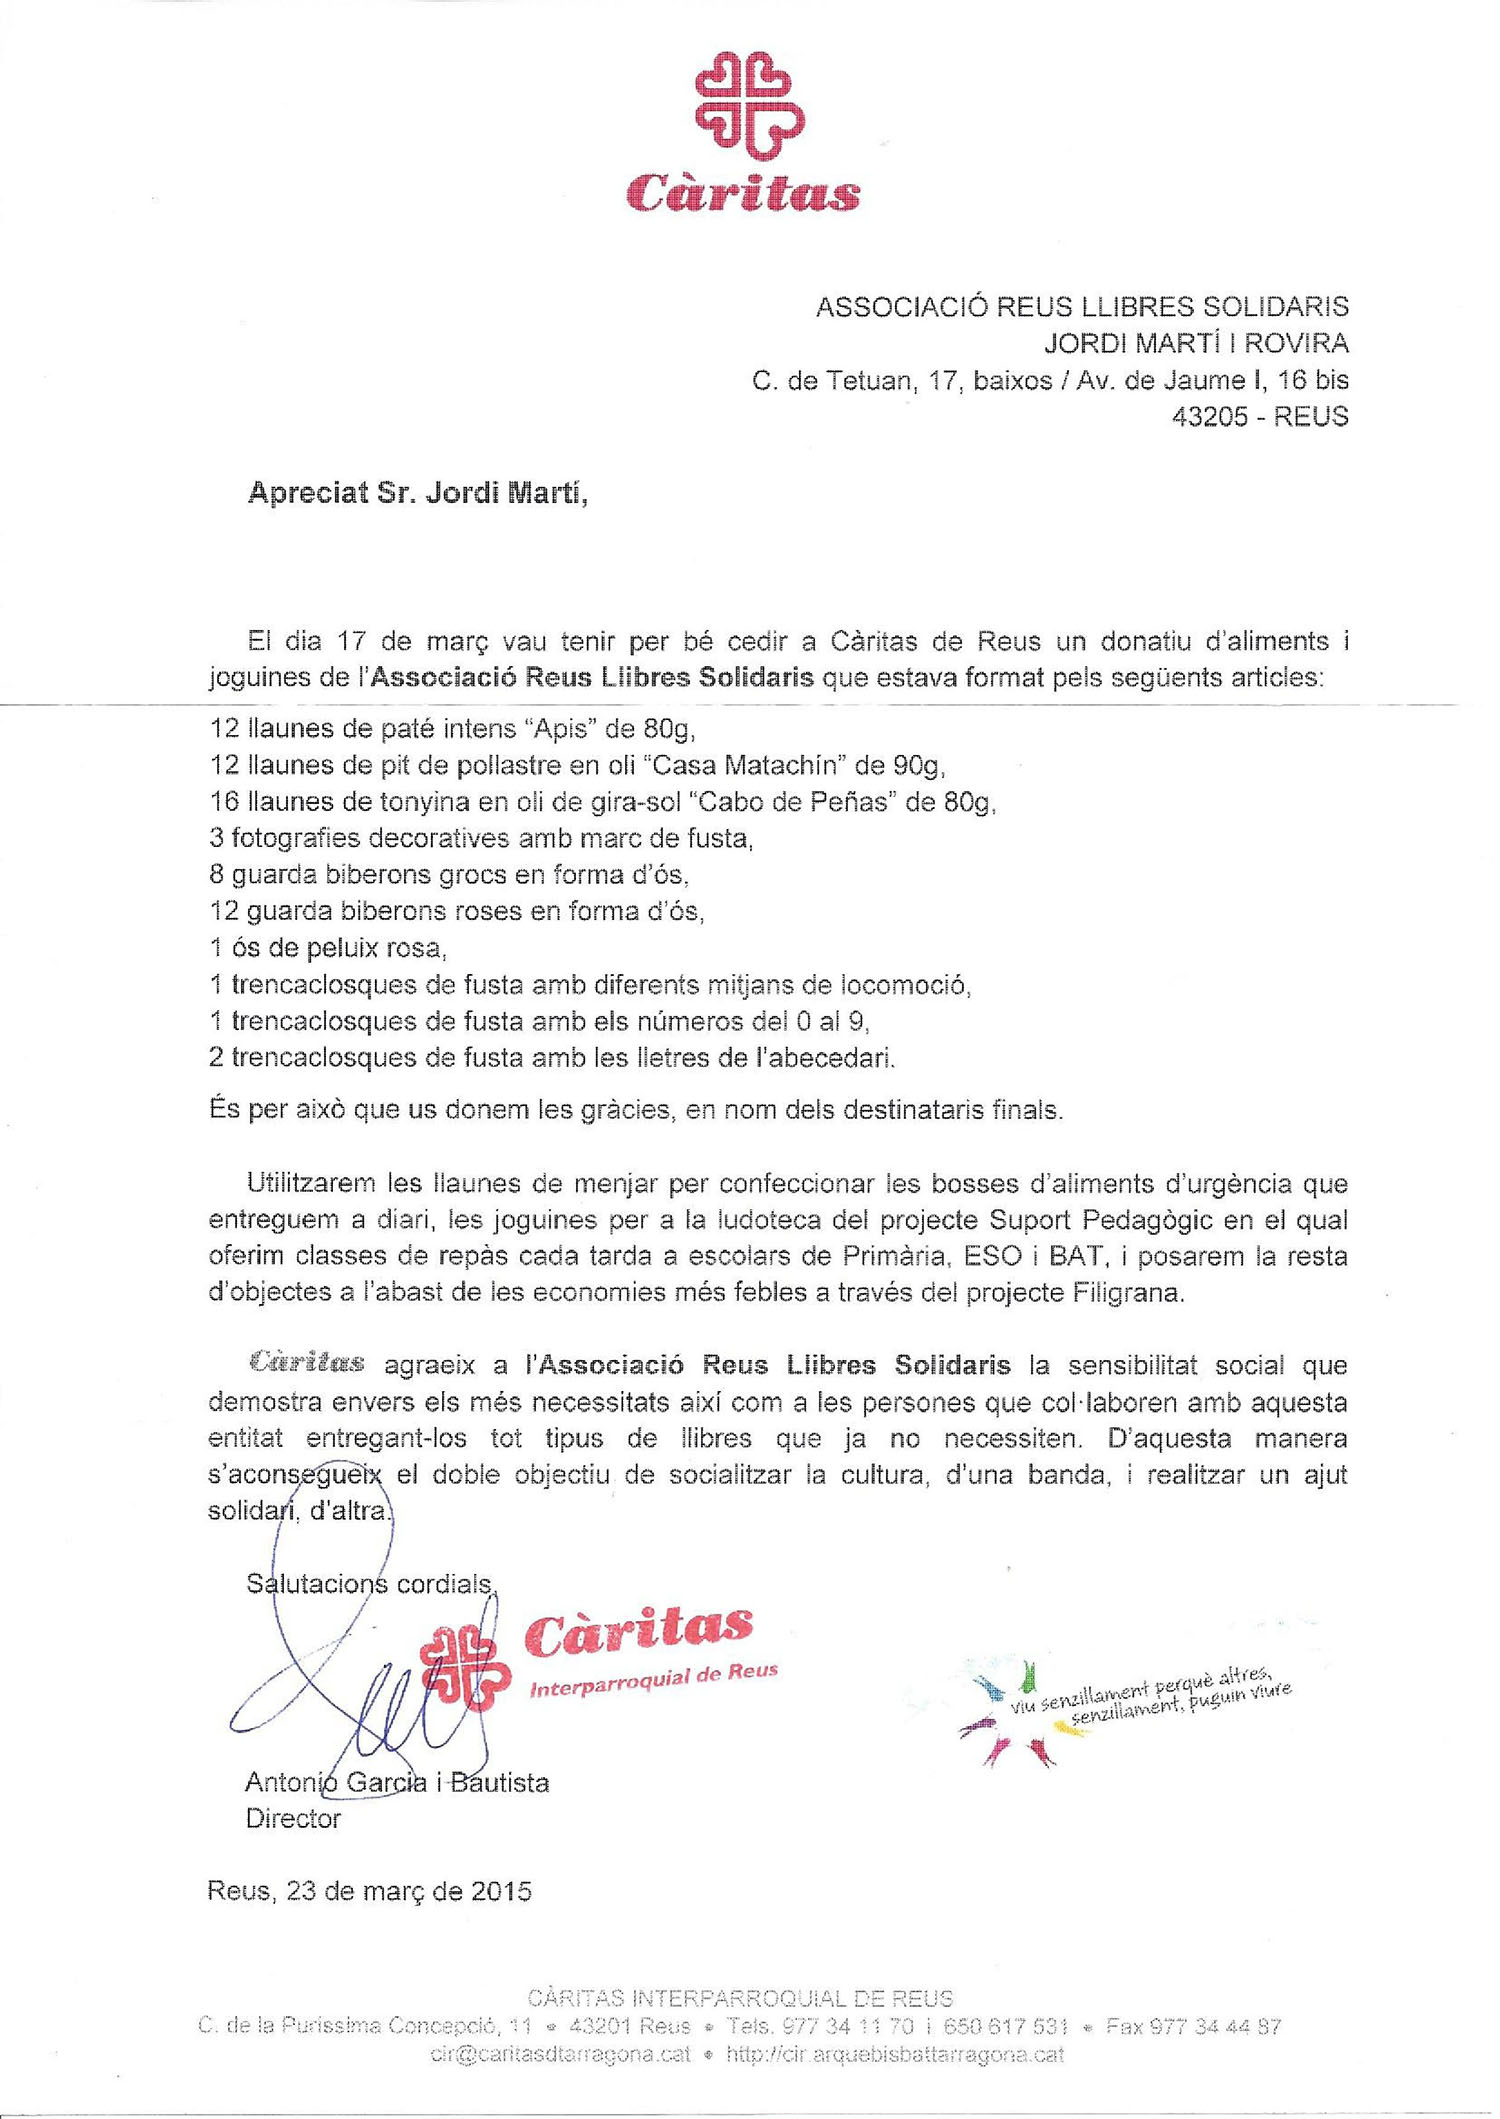 carta-de-agradecimiento-de-Caritas-a-ARLS-del 23-03-2015